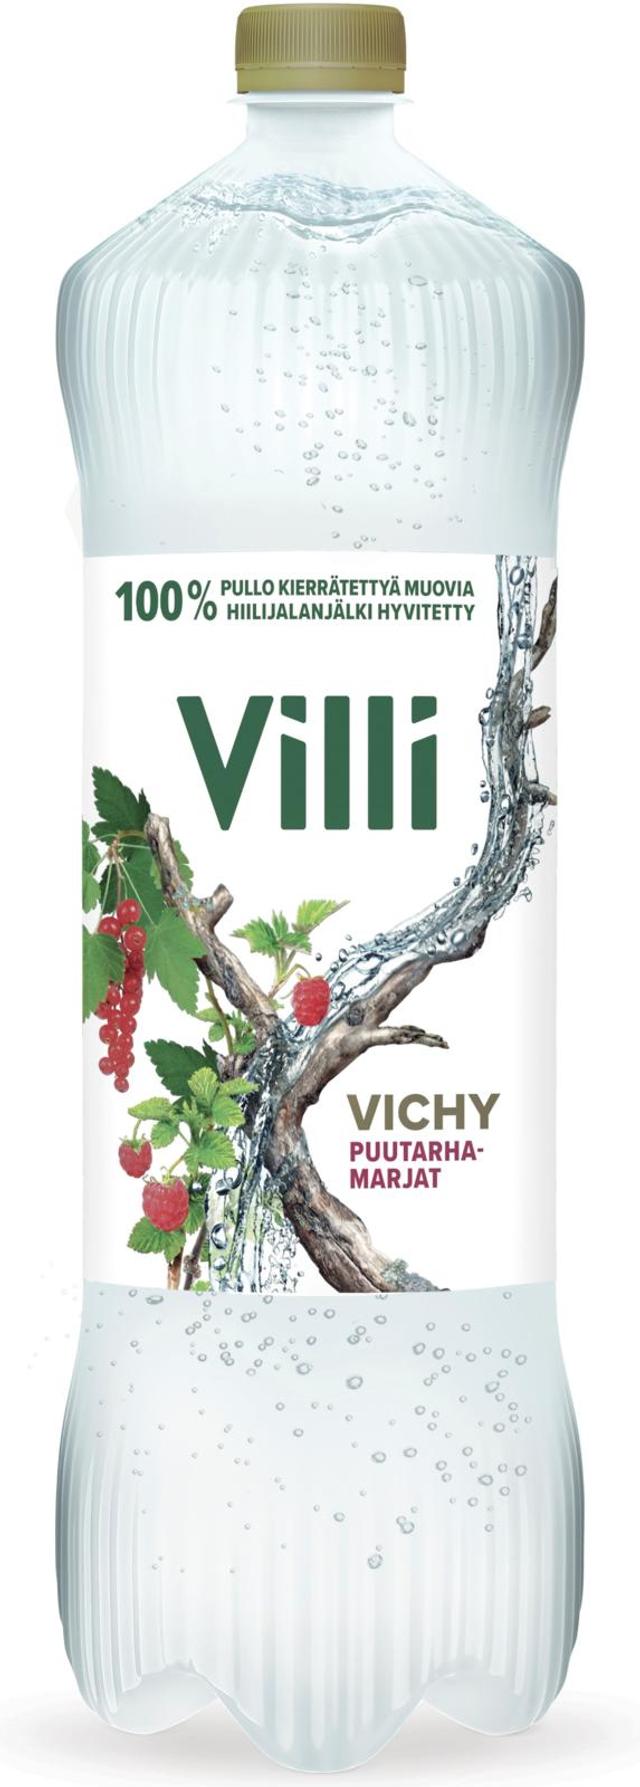 Villi Vichy puutarhanmarjat 1,5 l